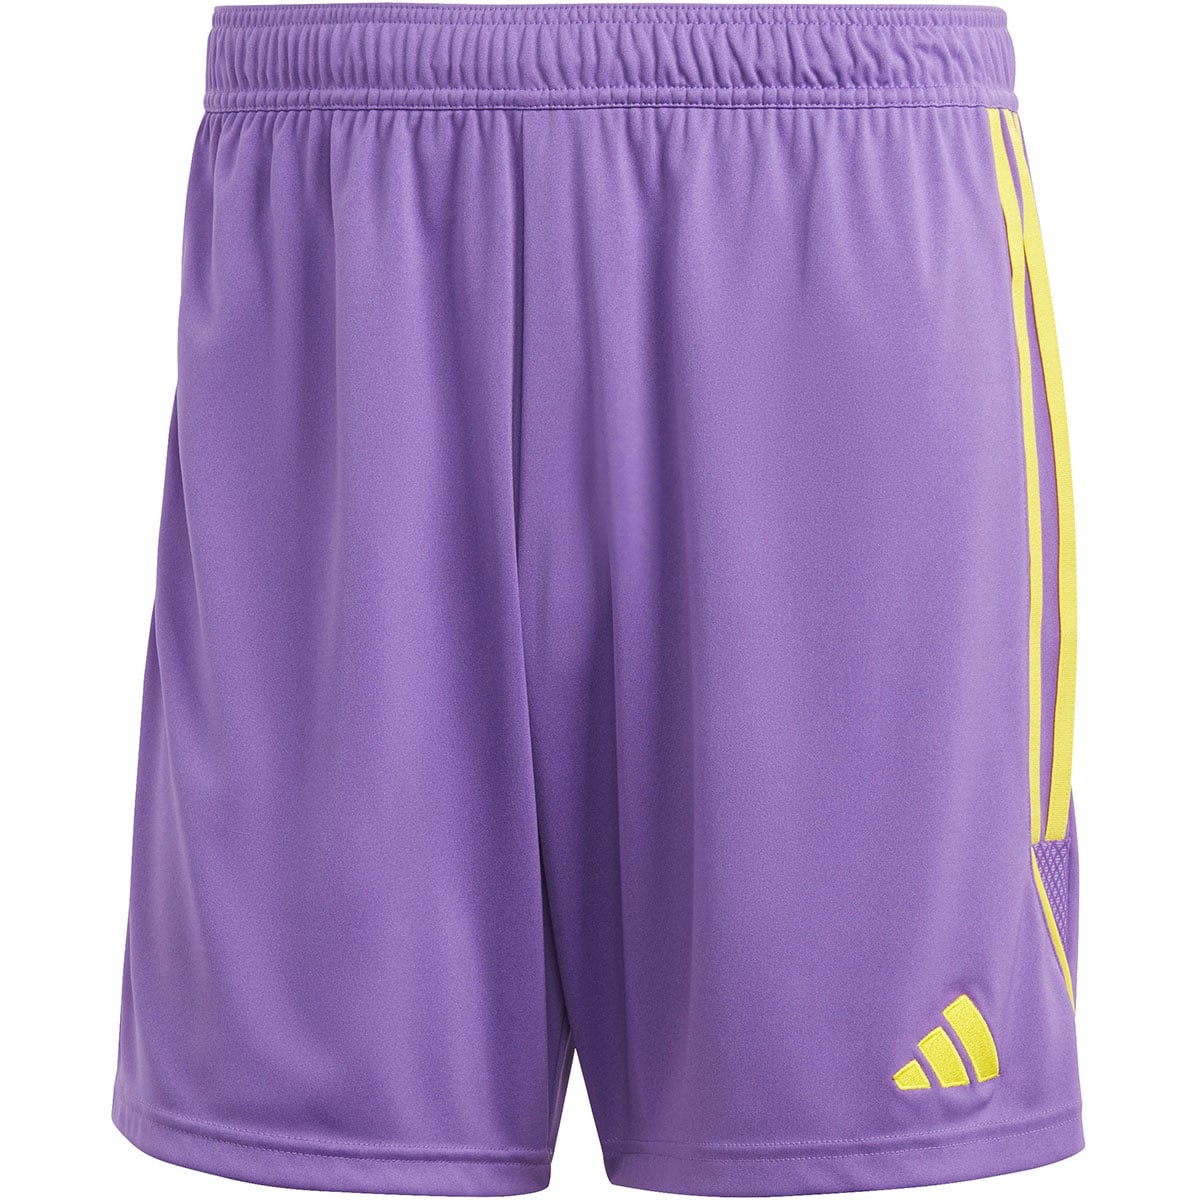 Adidas Herren Shorts Tiro 23 lila-gelb